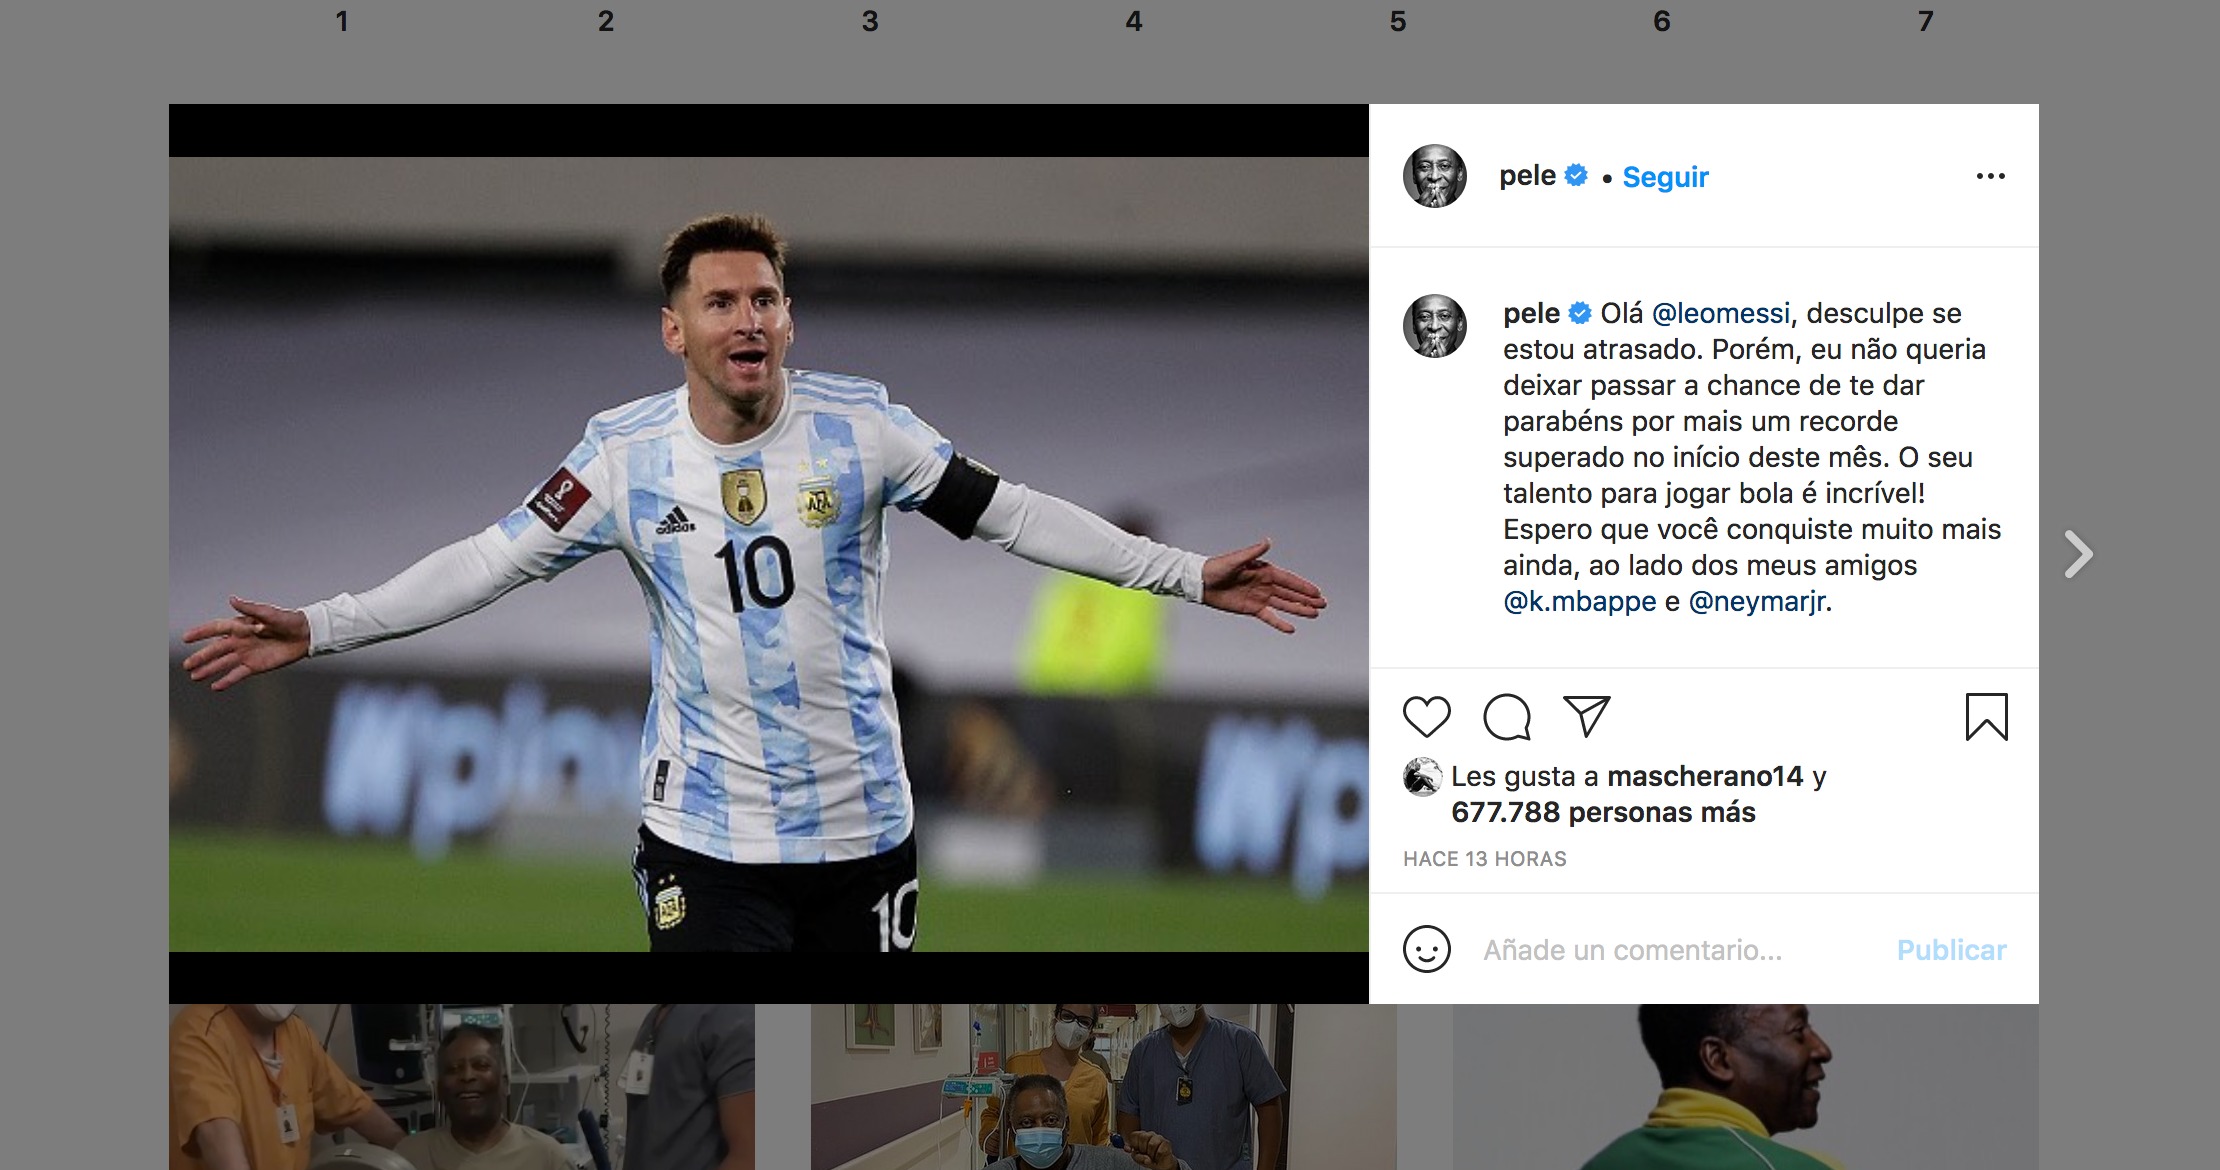 El mensaje de Pelé en Instagram.